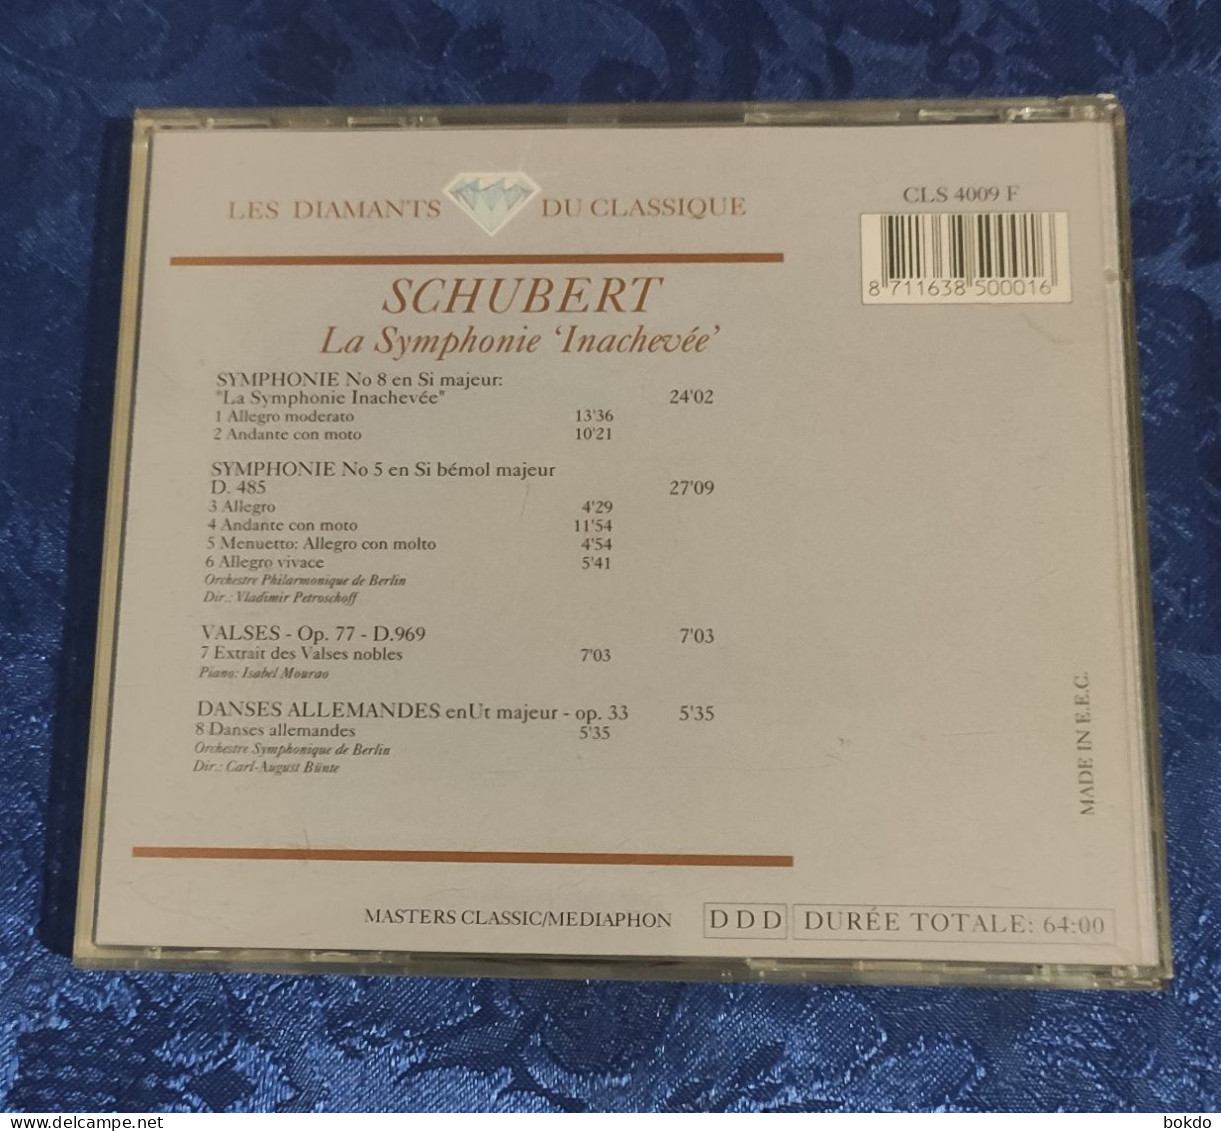 Schubert - La Symphonie "inachevée" - Classica